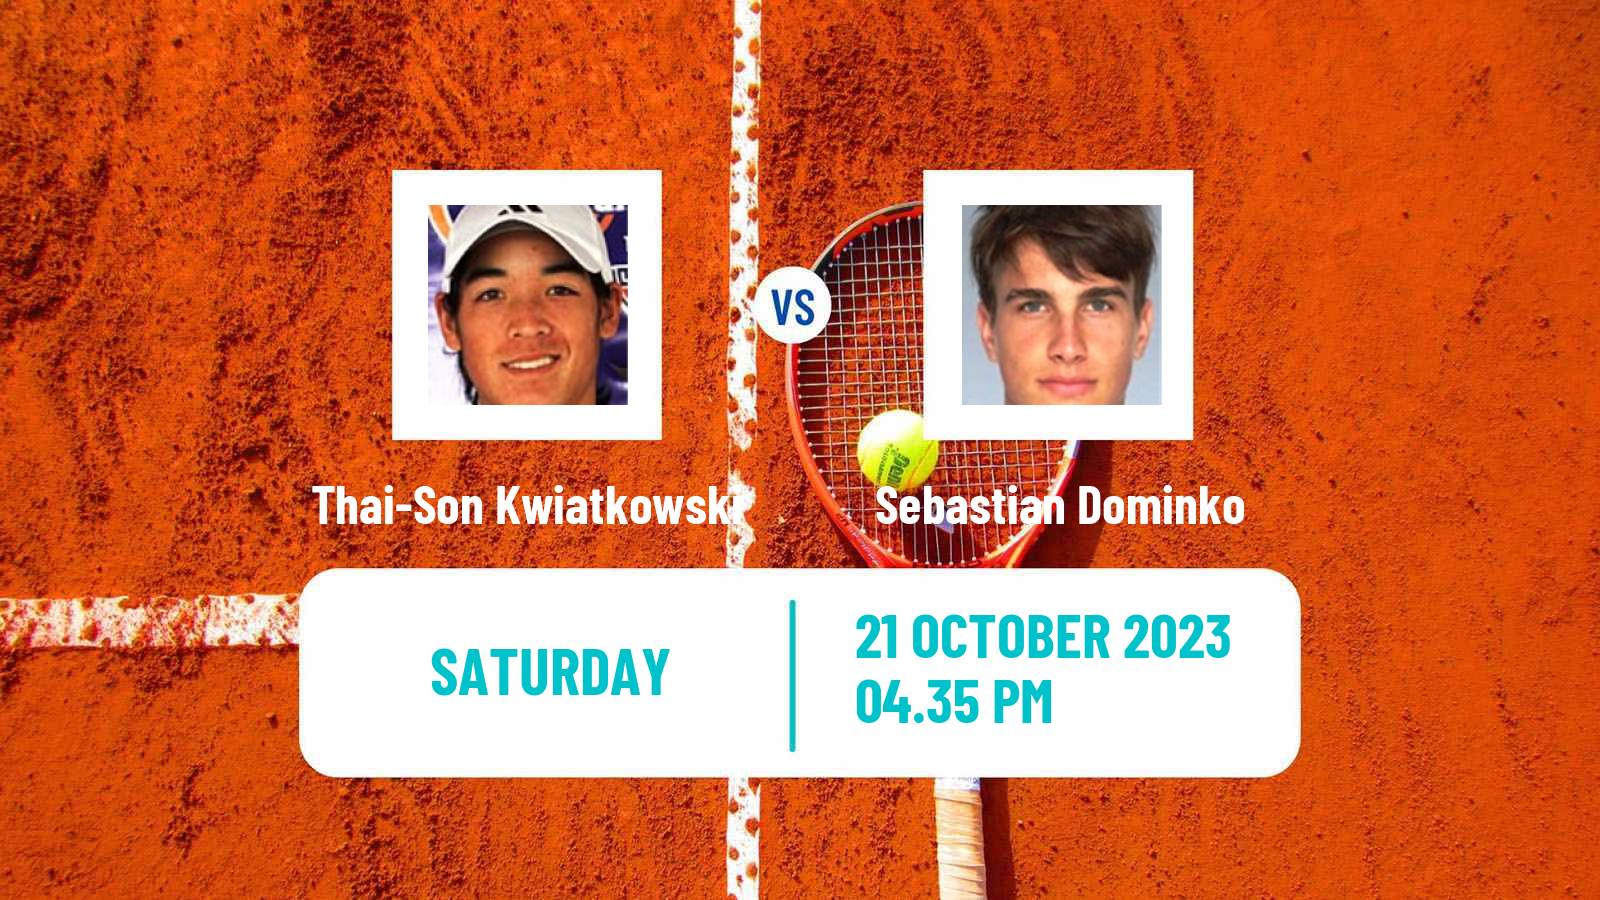 Tennis ITF M15 Las Vegas Nv Men Thai-Son Kwiatkowski - Sebastian Dominko